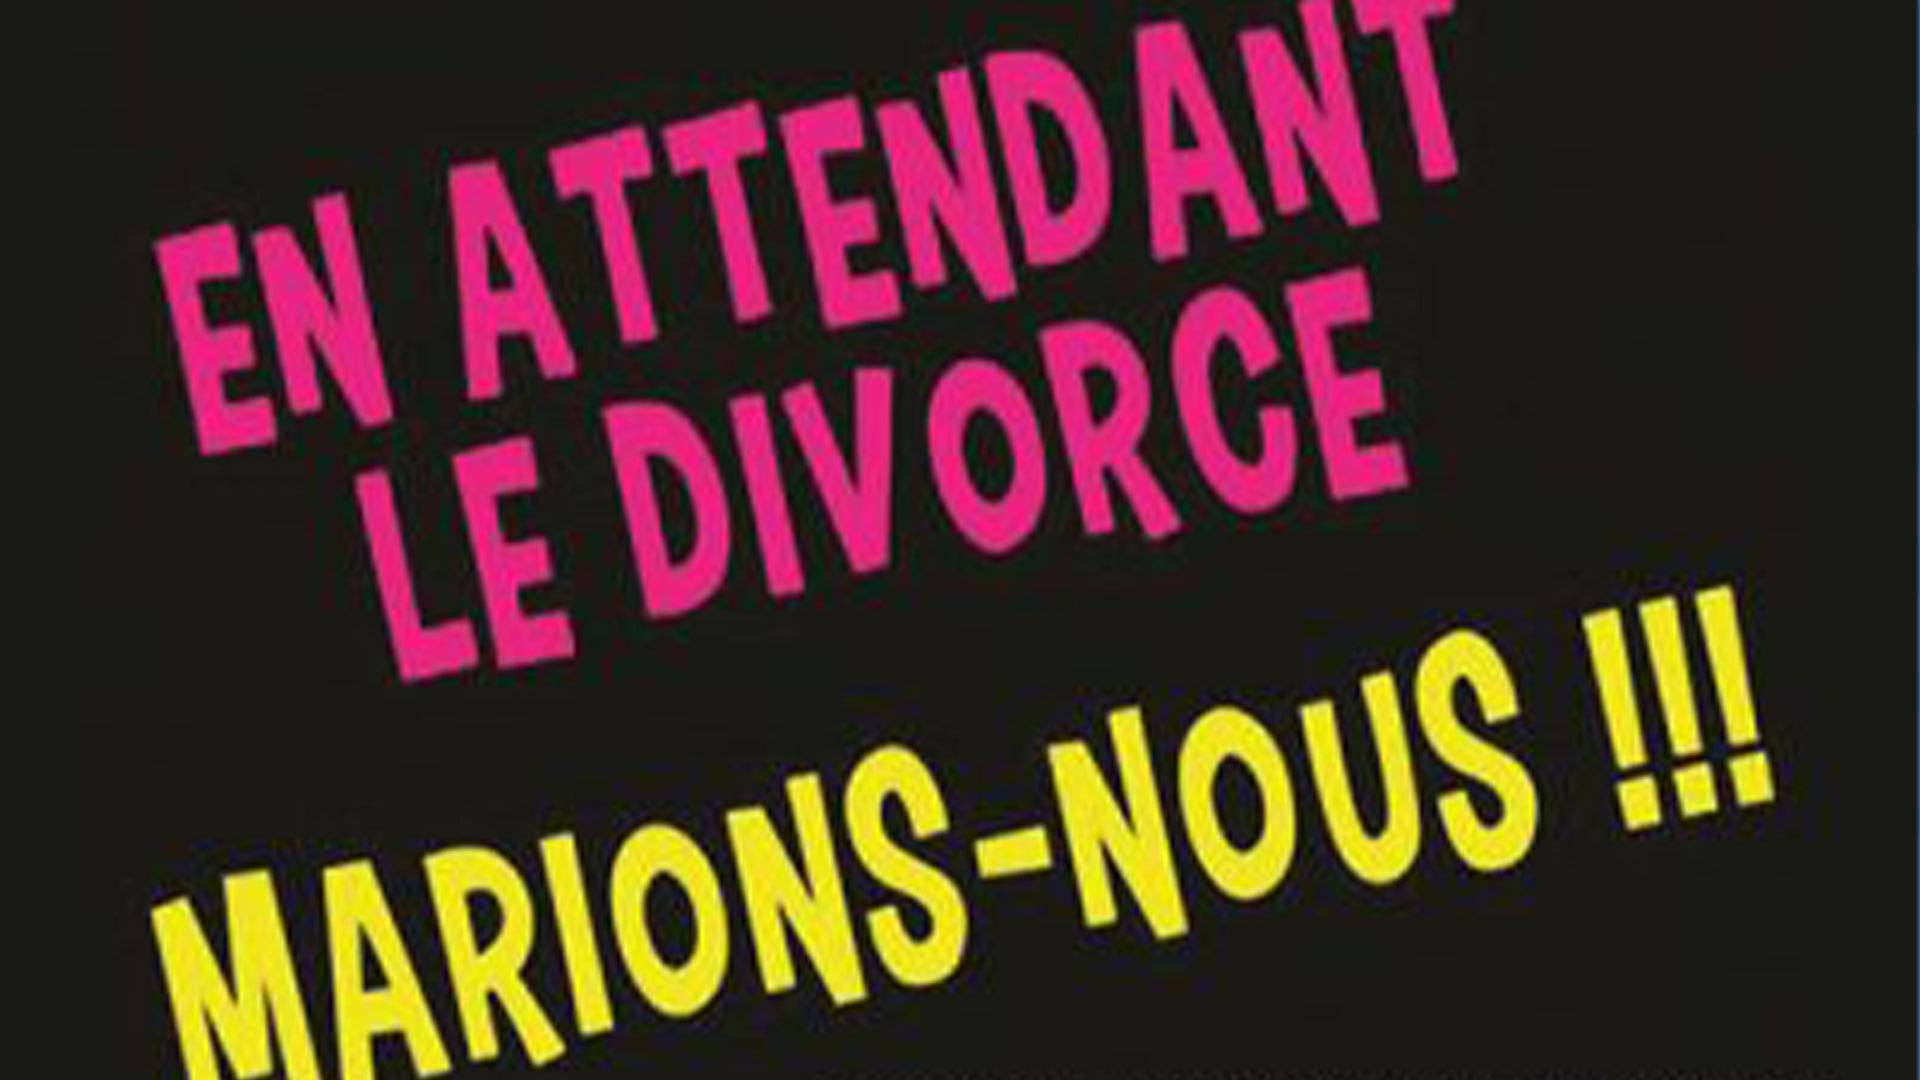 "En attendant le divorce marions nous" à l'Entrepot à Mulhouse